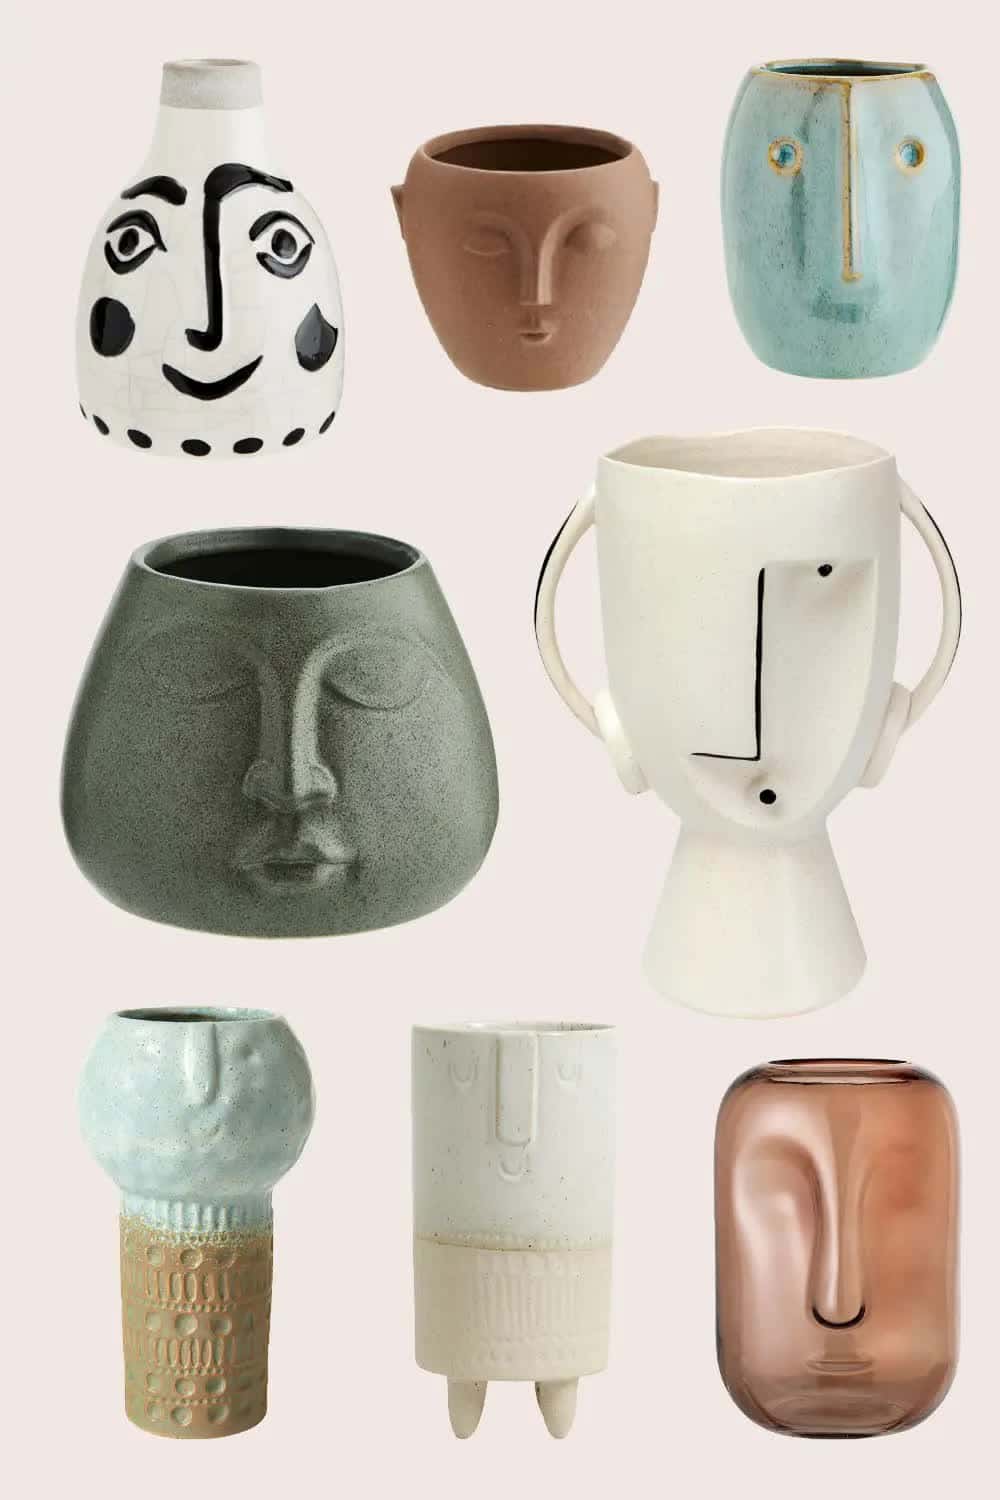 Vase mit Gesicht: Dieser süße Deko-Trend bringt Charakter in deine Wohnung